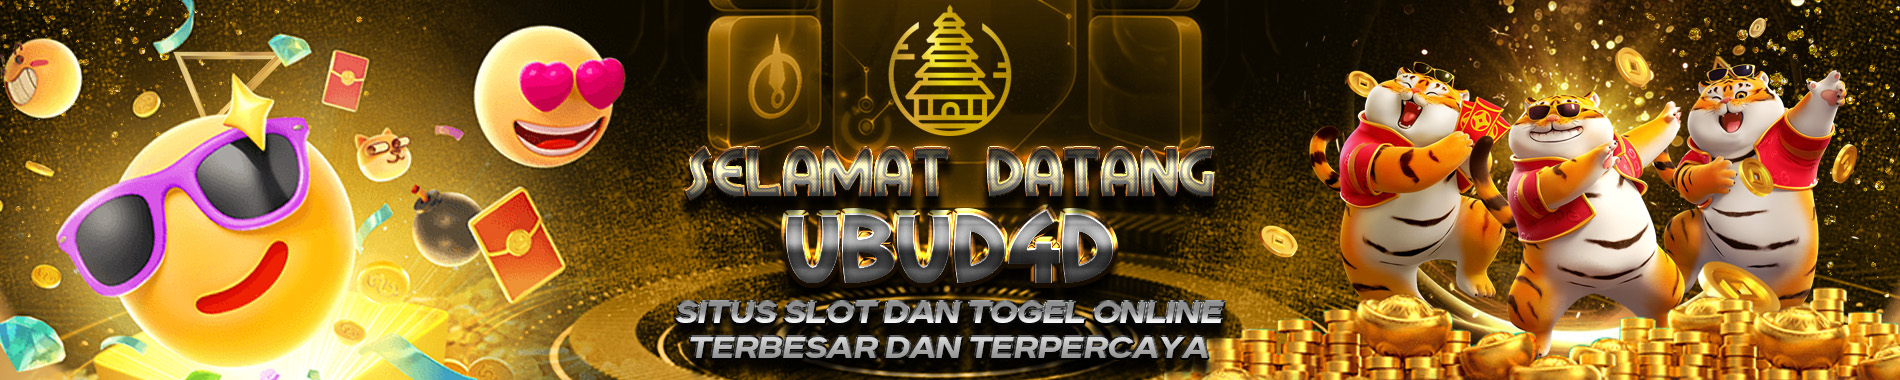 welcome ubud4d